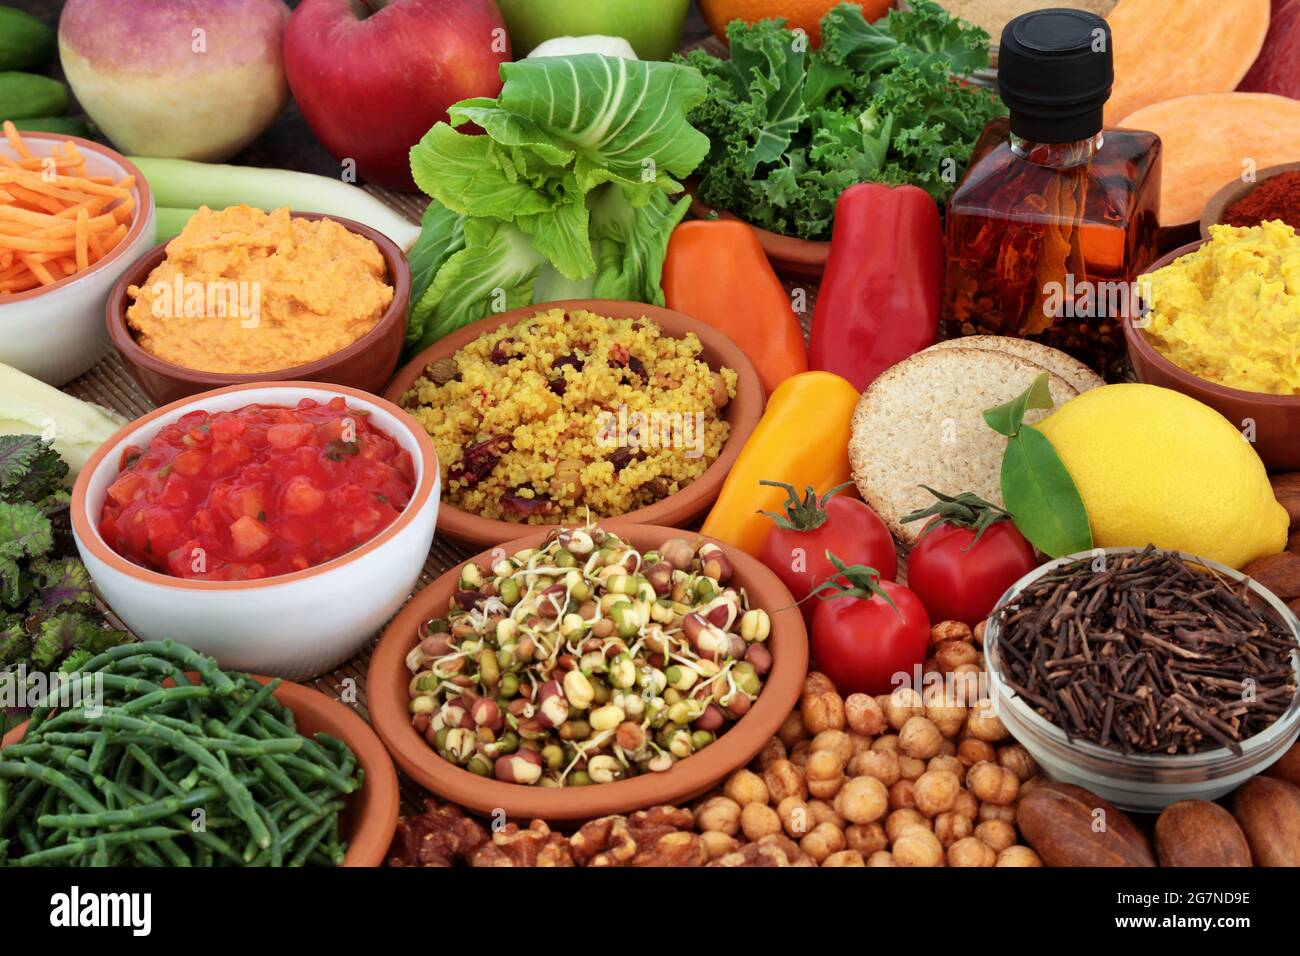 Alimentation saine pour manger propre régime végétalien élevé en protéines, oméga 3, vitamines, minéraux, antioxydants, anthocyanines, fibres. Banque D'Images